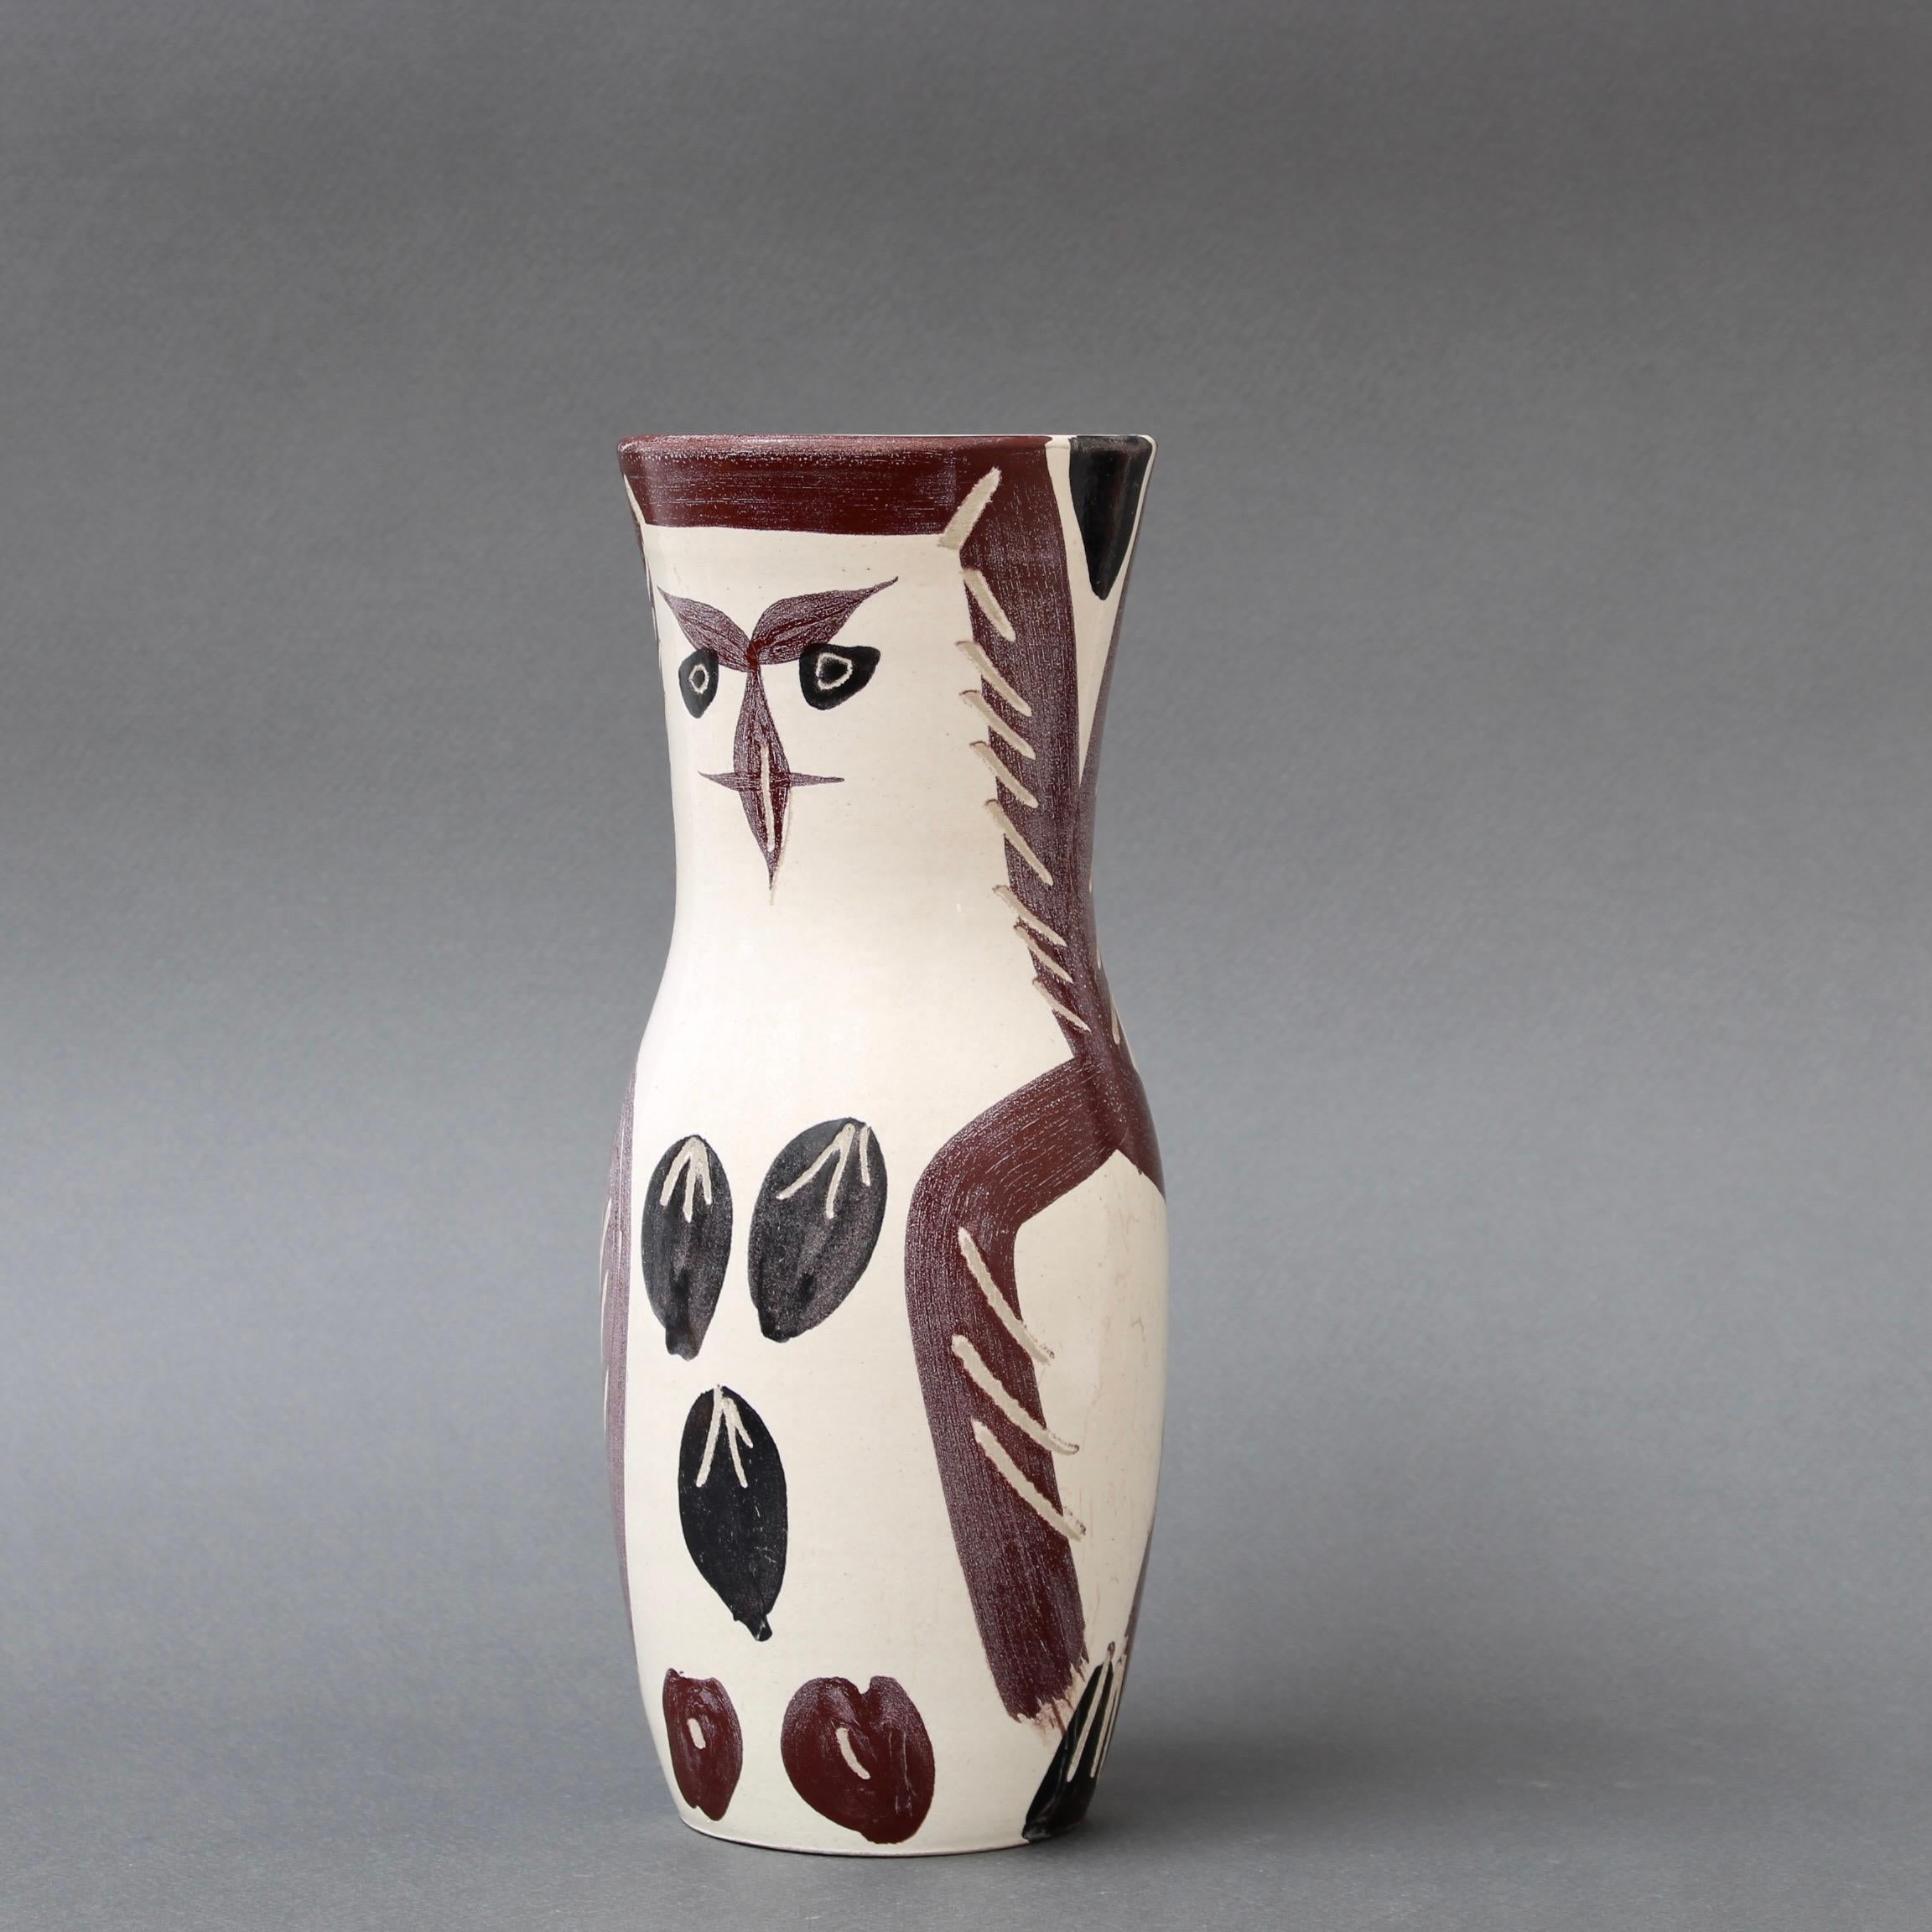 Vase aus Steingut mit gemaltem Eulendekor, Mitte des Jahrhunderts, von Pablo Picasso, Vallauris, Frankreich (1952). Es handelt sich um eine Vintage-Kreation aus Steingut, die in einer Auflage von 500 Stück (Edition Picasso) in der Töpferei Madoura